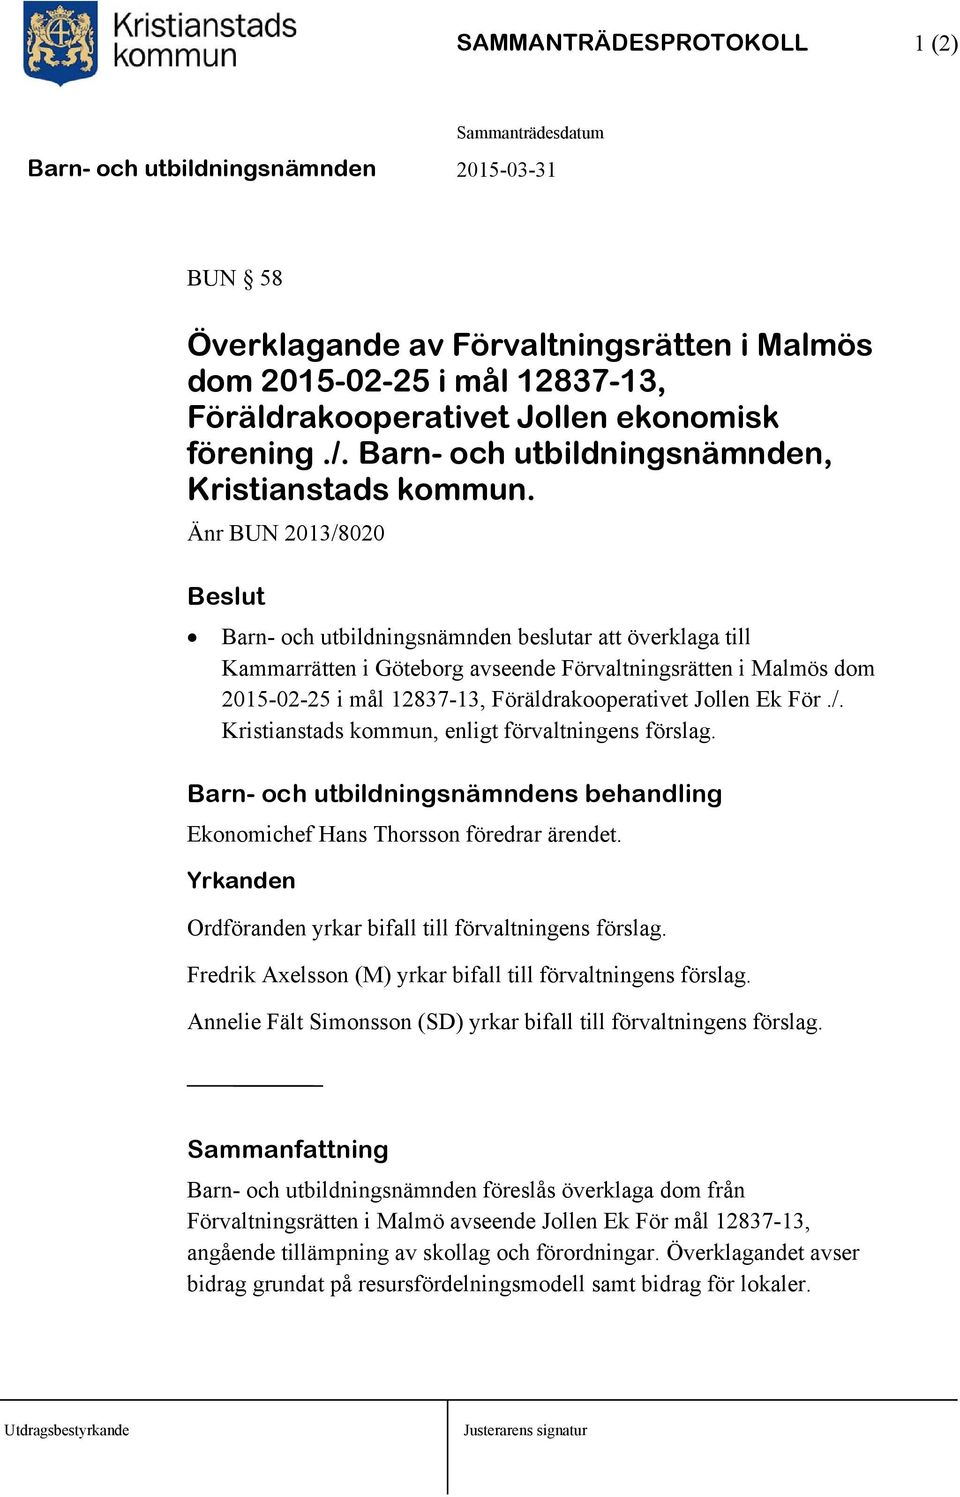 Änr BUN 2013/8020 Barn- och utbildningsnämnden beslutar att överklaga till Kammarrätten i Göteborg avseende Förvaltningsrätten i Malmös dom 2015-02-25 i mål 12837-13, Föräldrakooperativet Jollen Ek